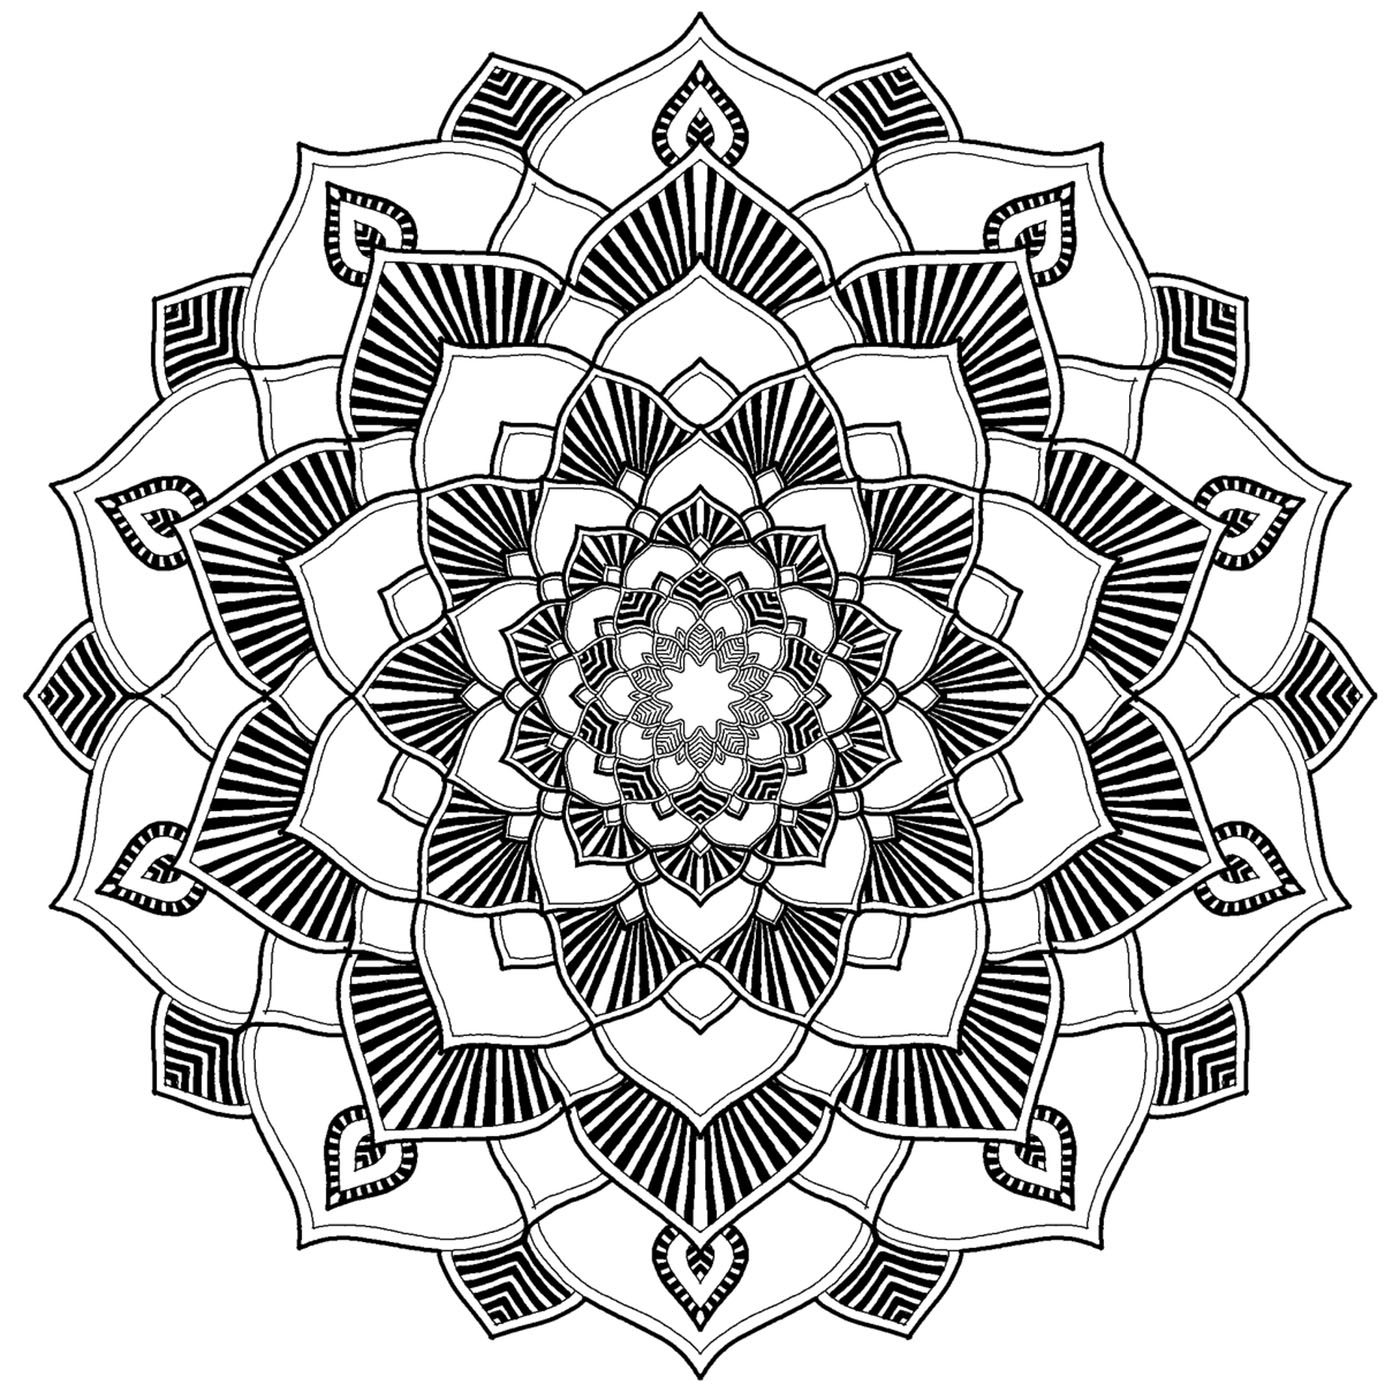 Superbe Mandala parfait pour se détendre et prendre plaisir à mettre en couleurs des motifs répétés et superbement dessinés.